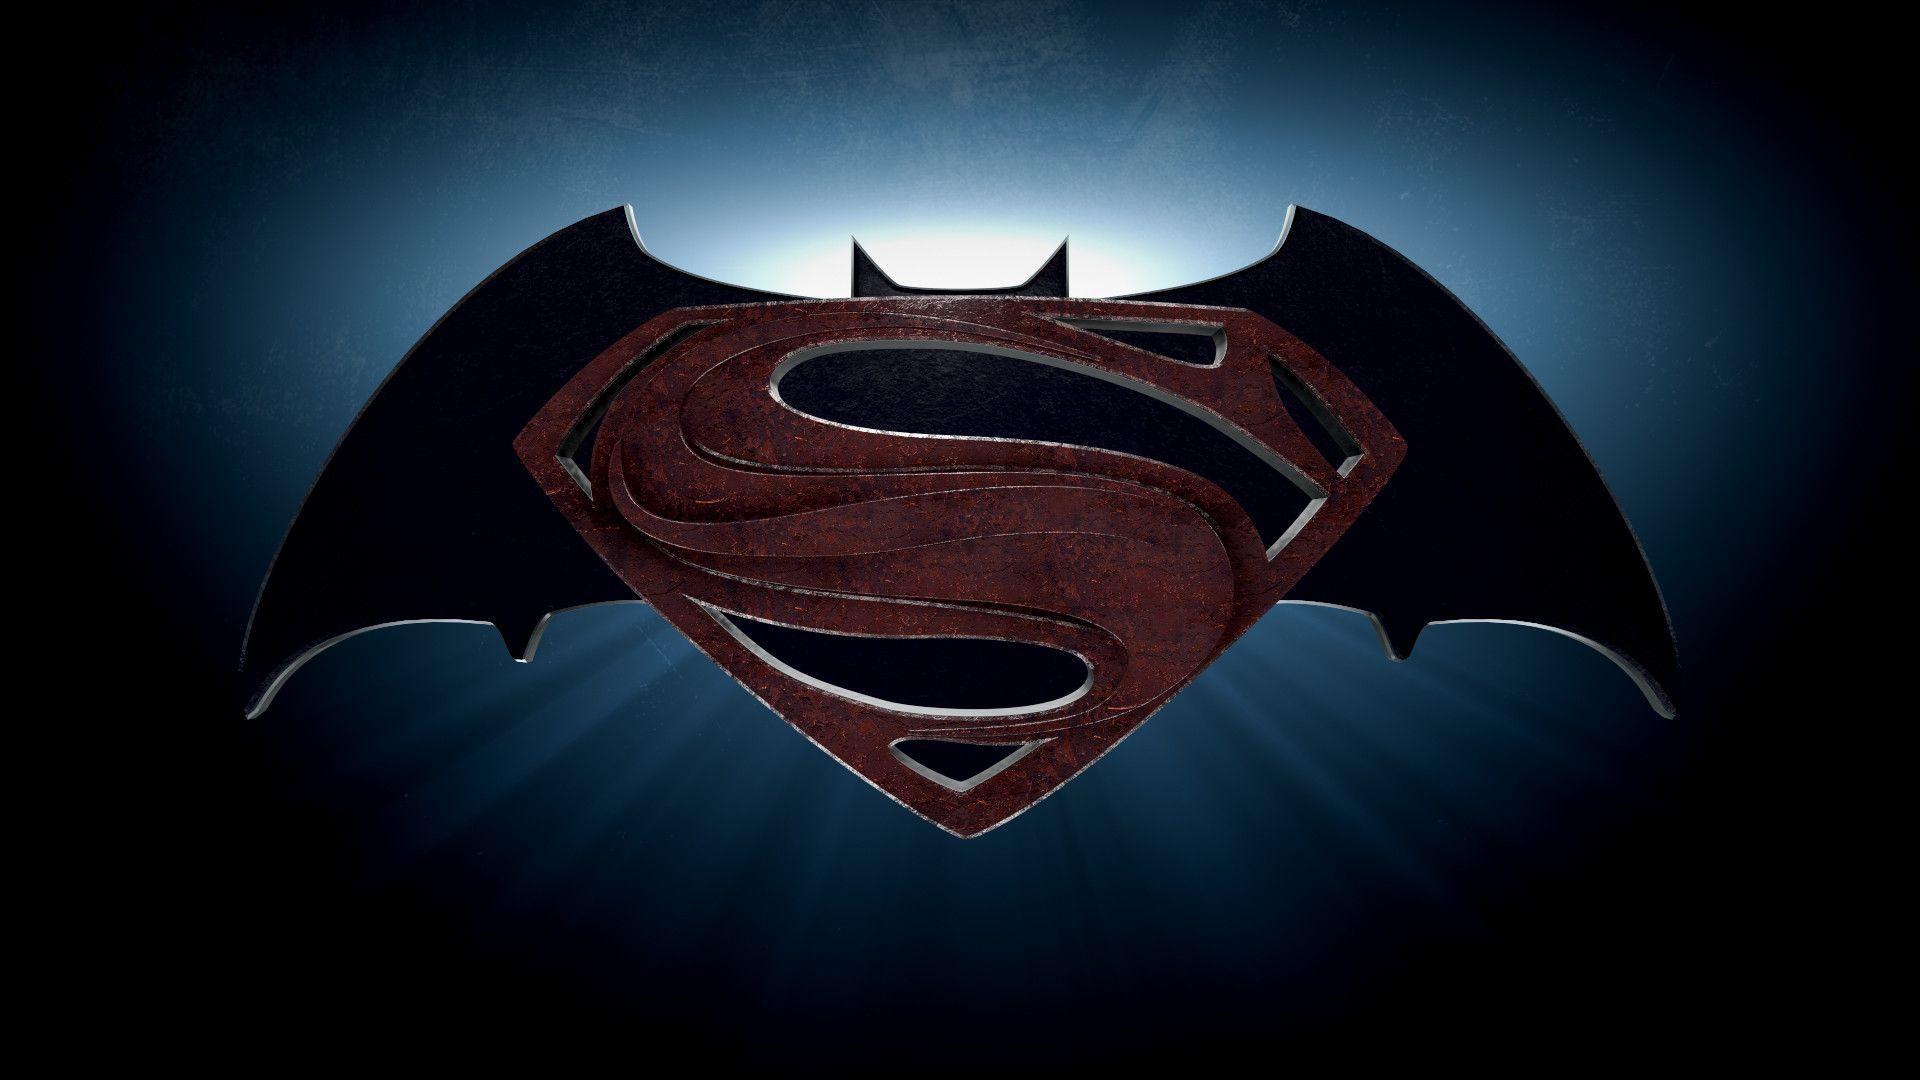 Batman V Superman Logo - Free Batman Vs Superman Logo Png, Download Free Clip Art, Free Clip ...